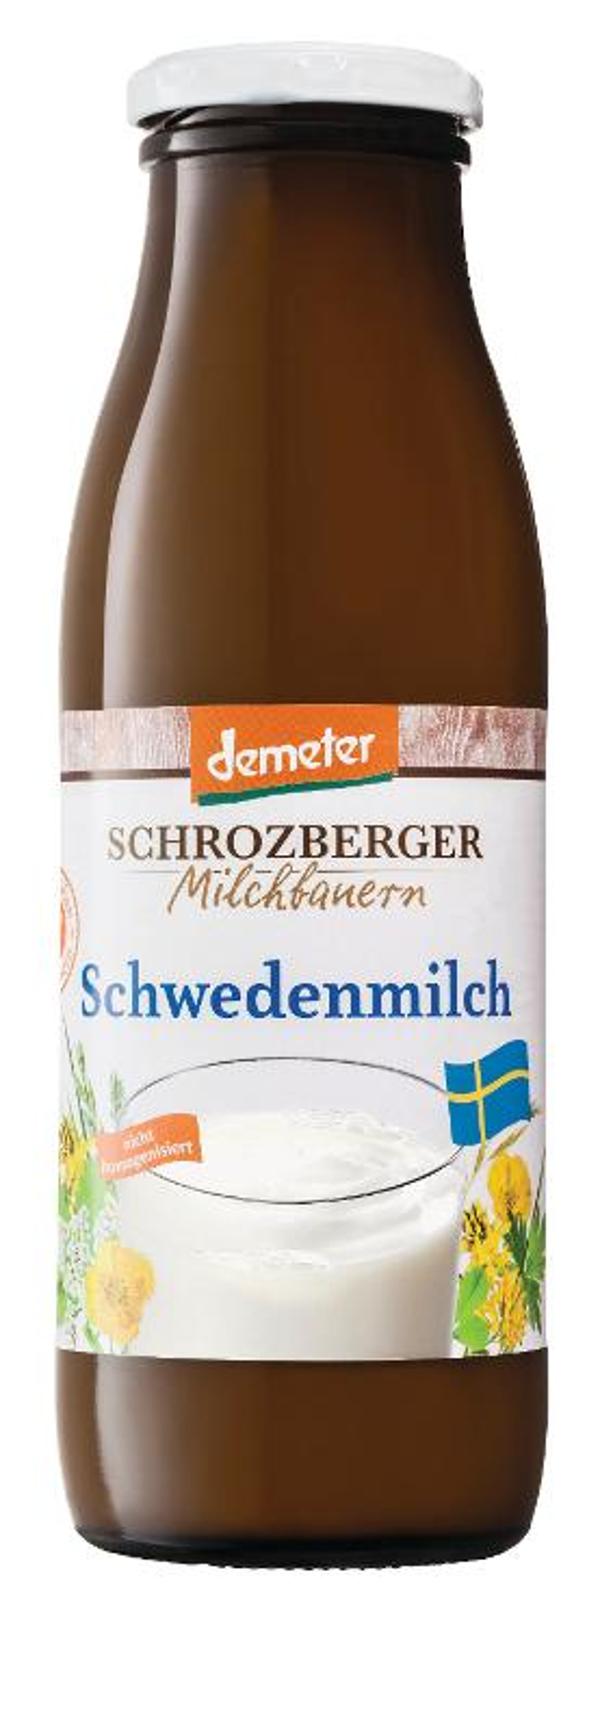 Produktfoto zu Schrozberger Schwedenmilch - 500g